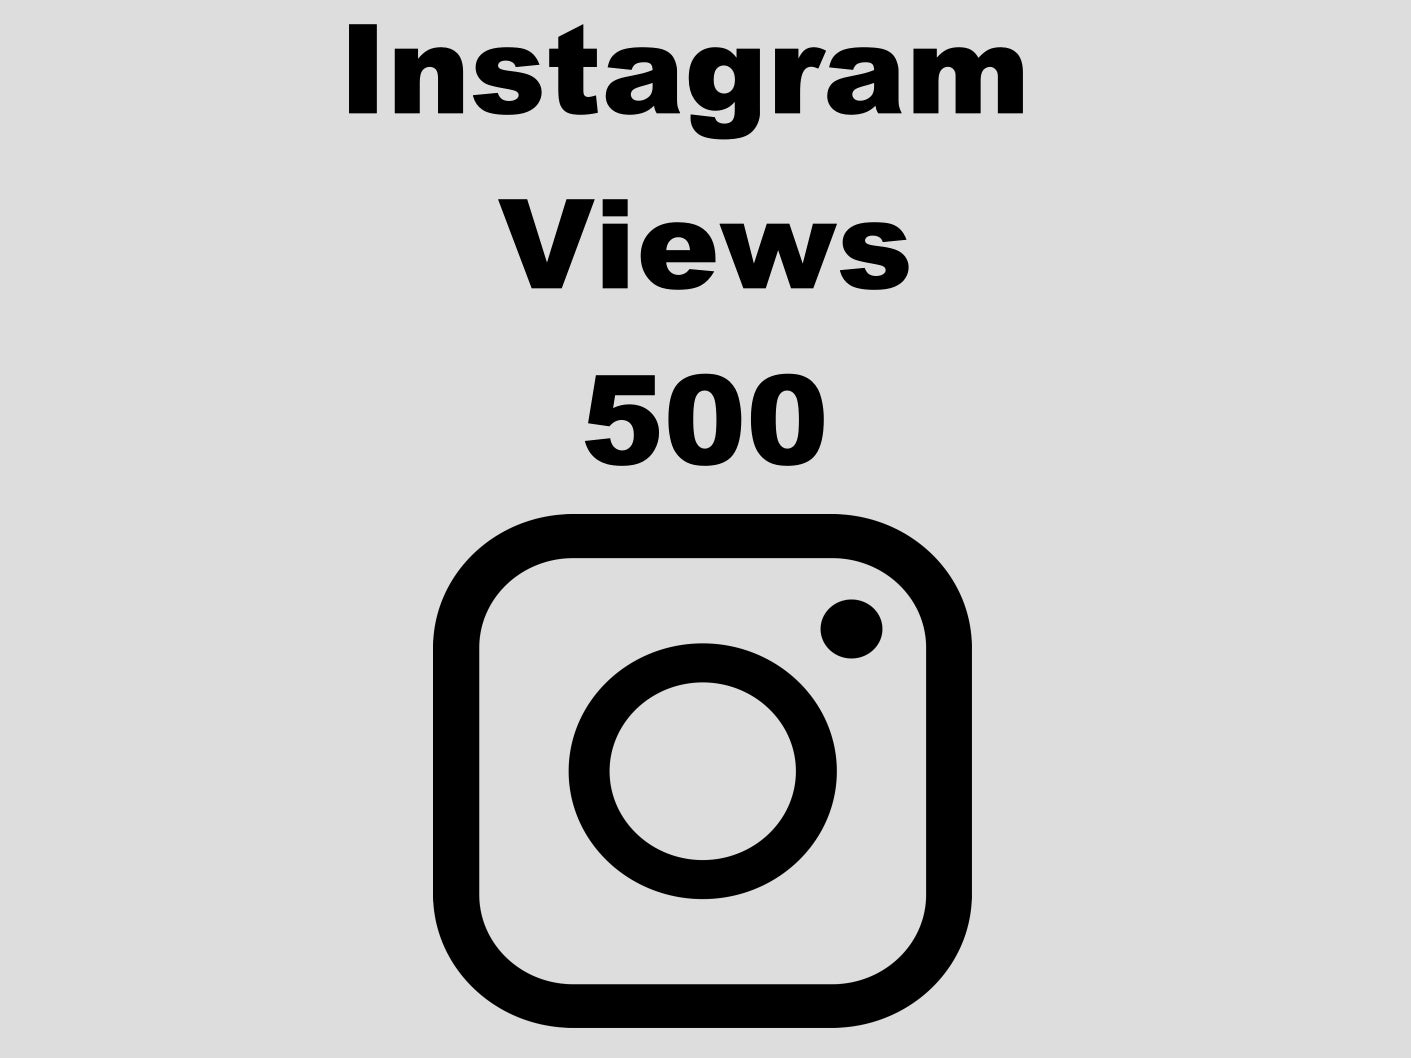 echte Instagram Views günstig kaufen 500 Views